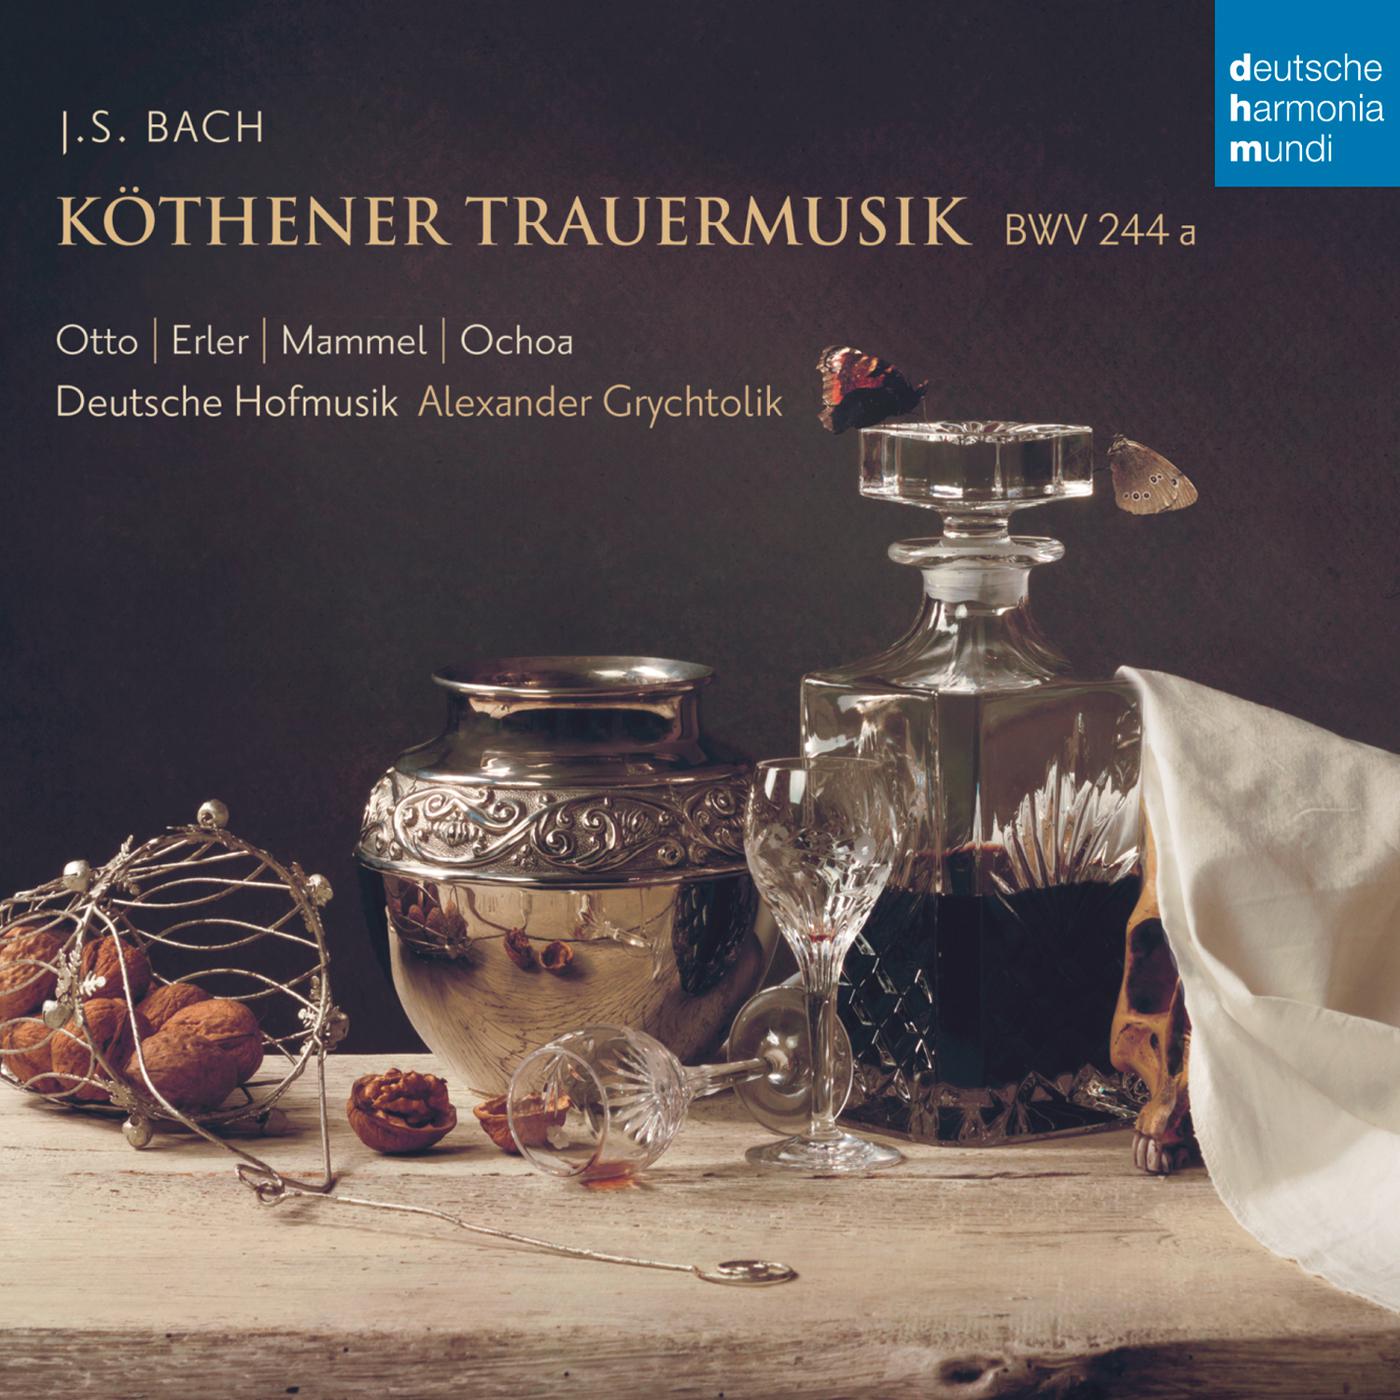 K thener Trauermusik, BWV 244a: Mit Freuden sei die Welt verlassen